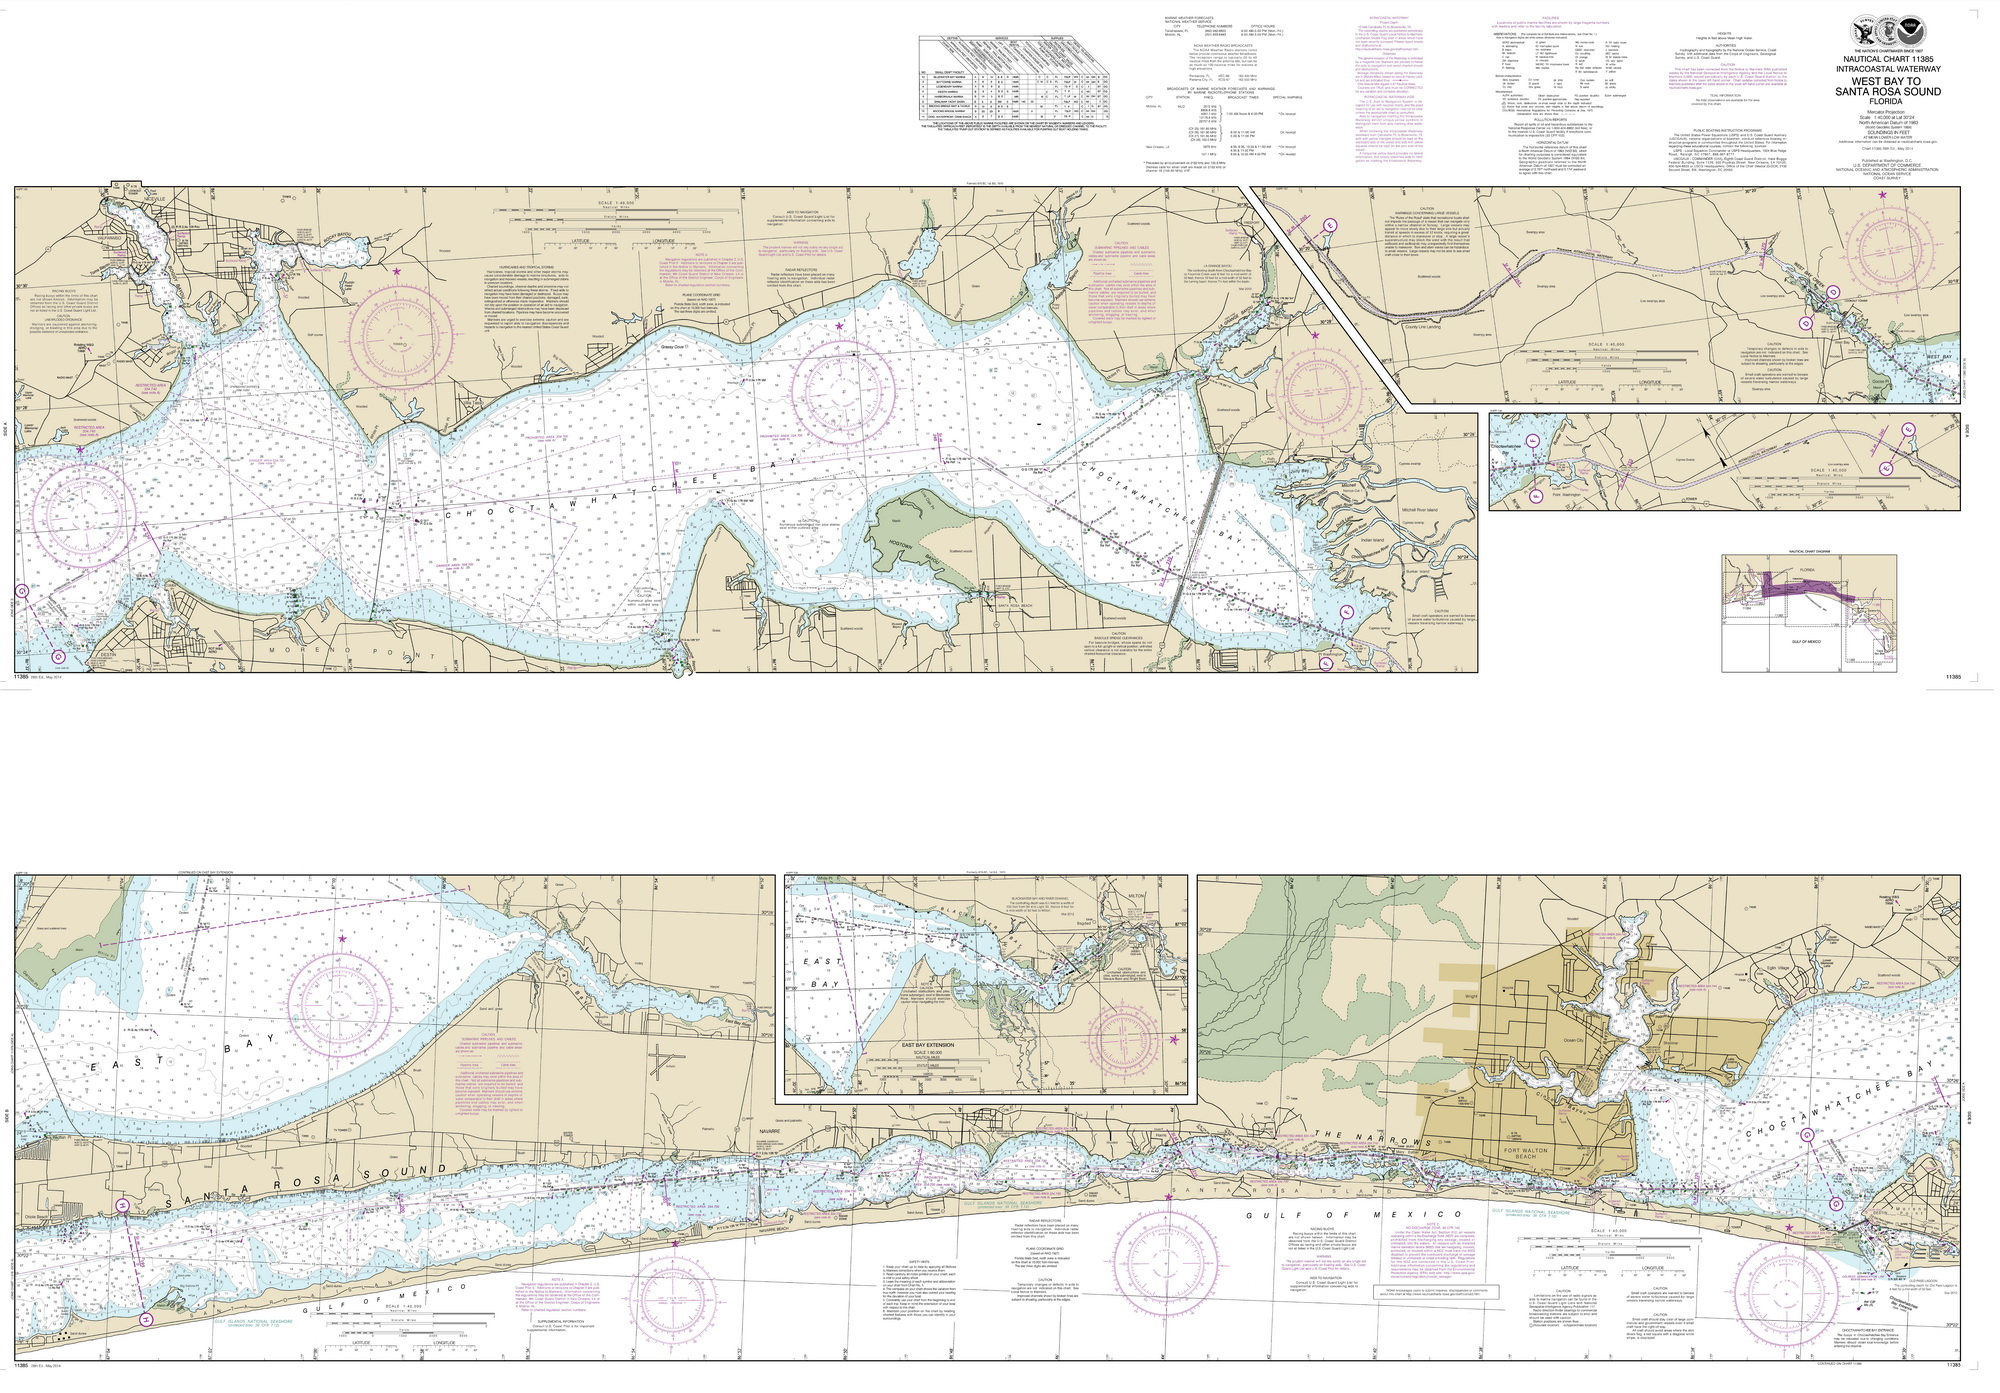 West Bay To Santa Rosa Sound 2014 Map Old Nautical Chart | Etsy - Santa Rosa Sound Florida Map